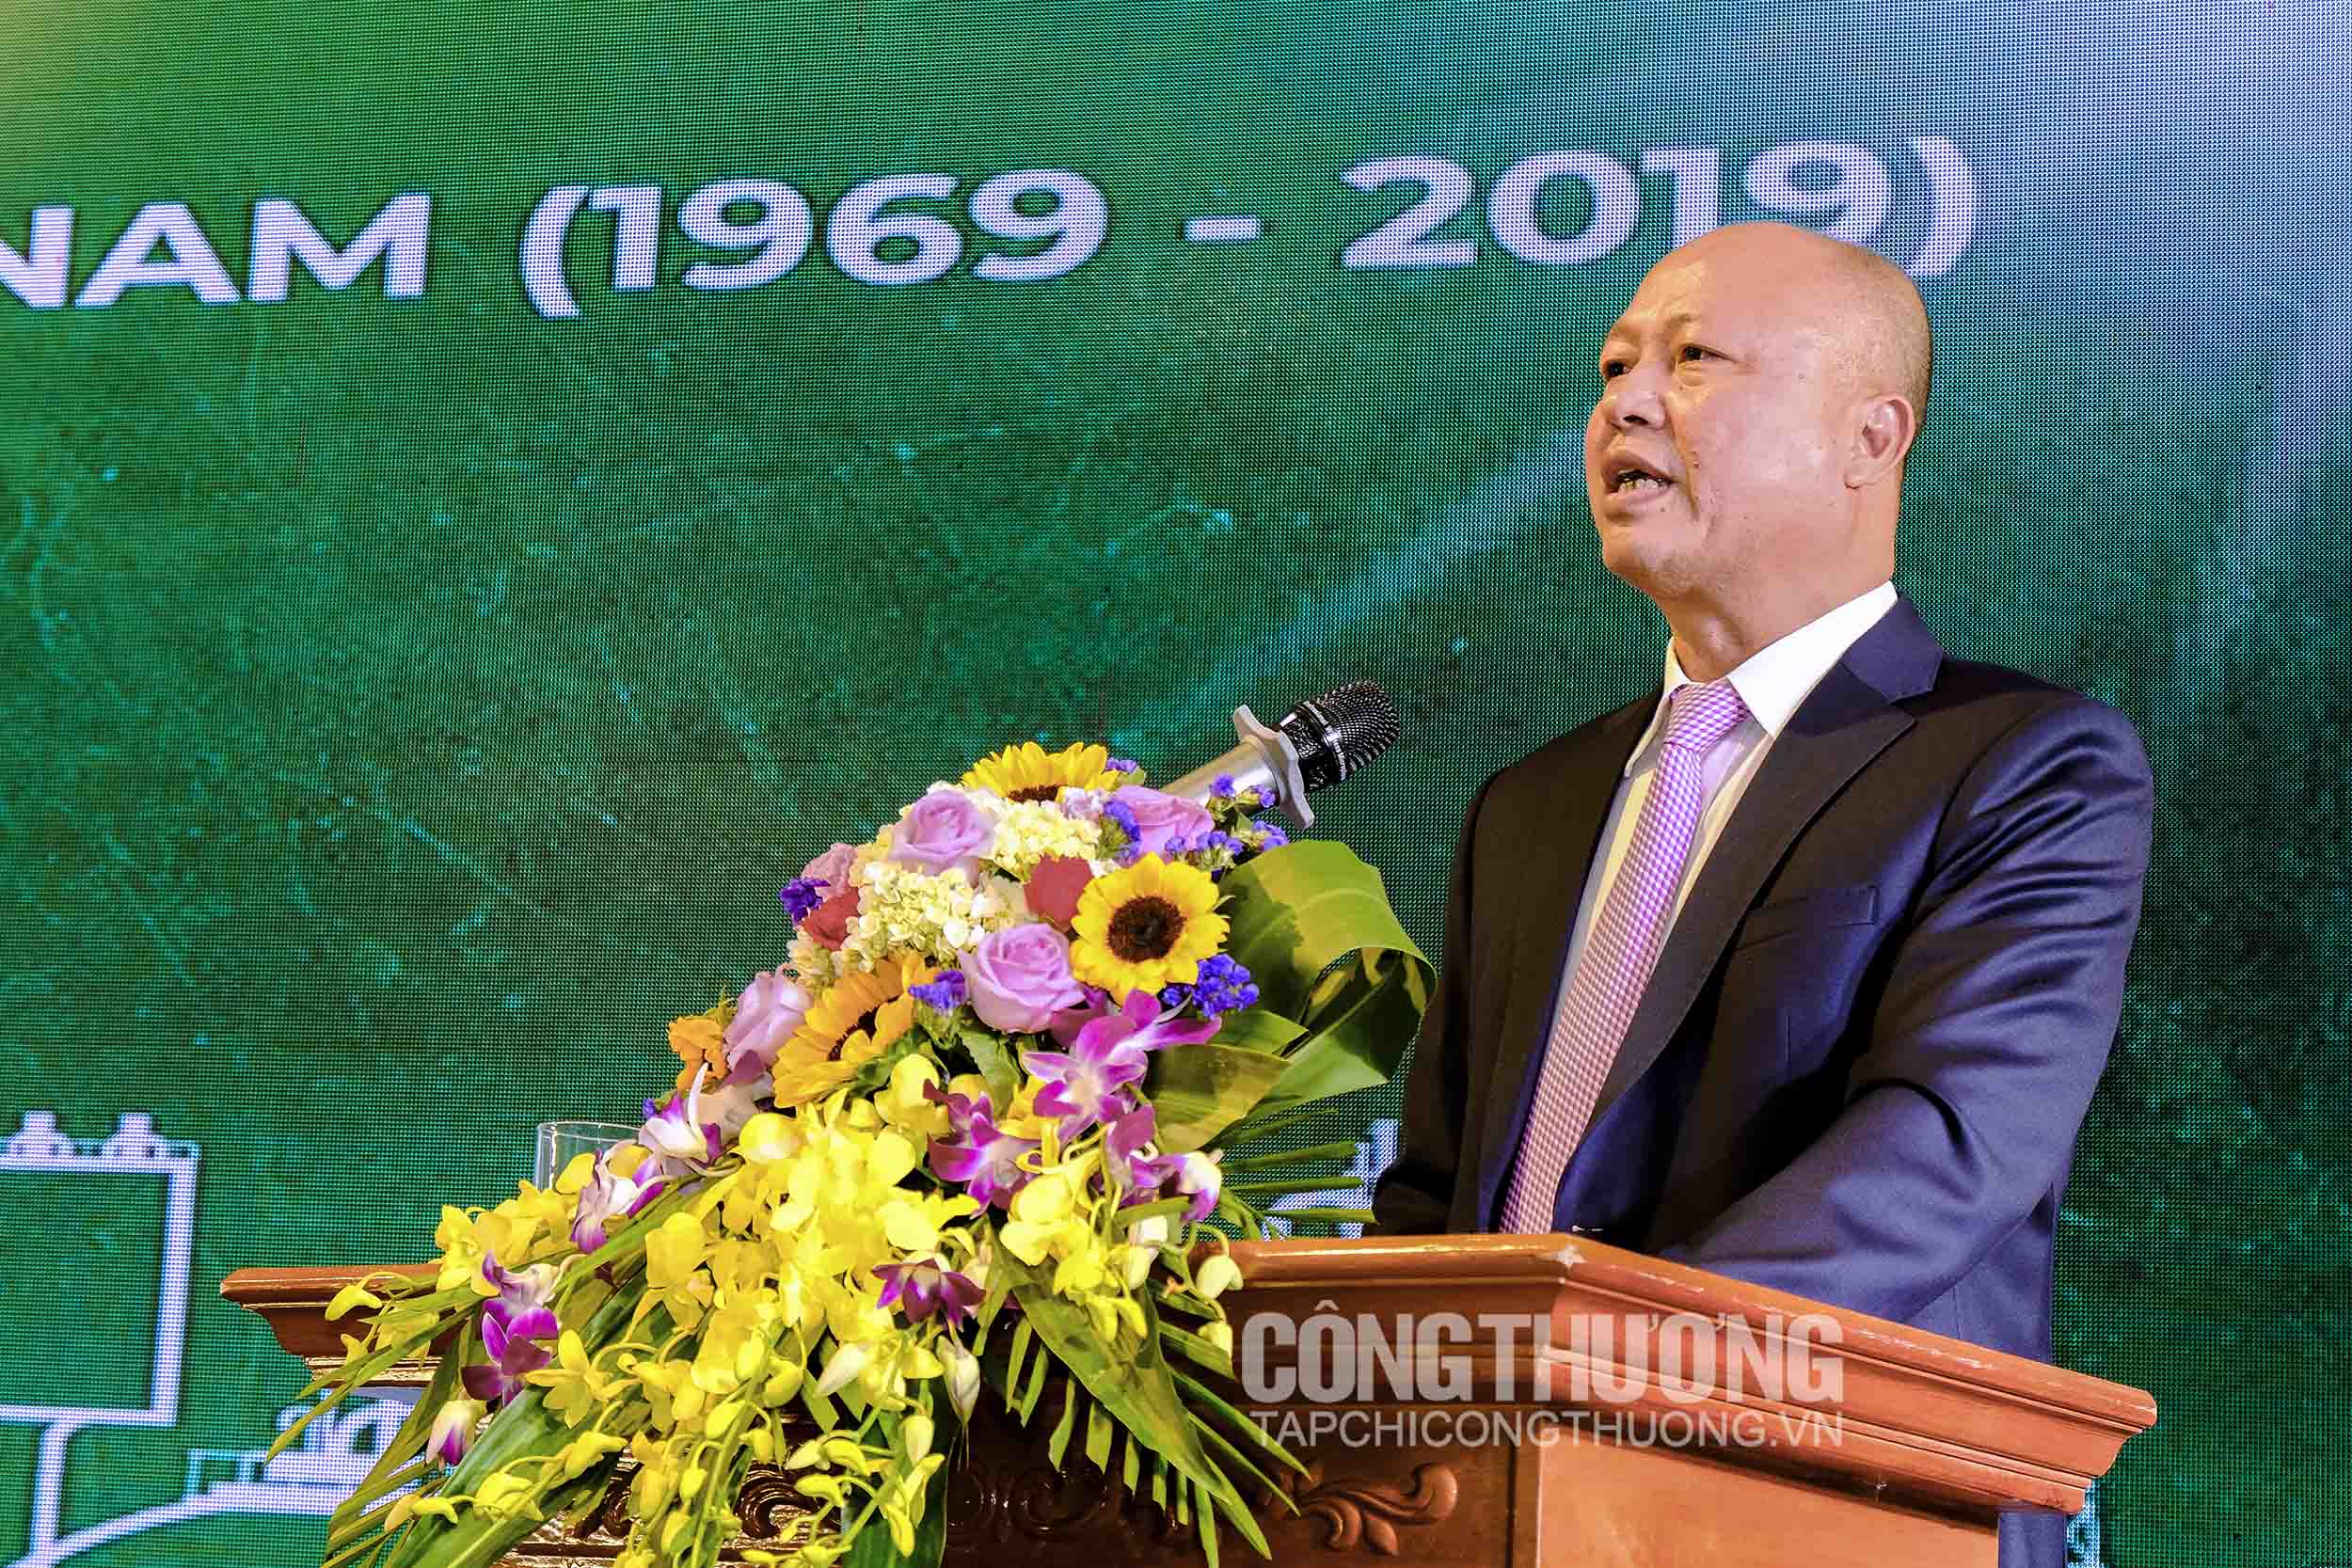 Chủ tịch HĐTV Vinachem Nguyễn Phú Cường tiếp thu ý kiến đóng góp của các đại biểu tại buổi Lễ